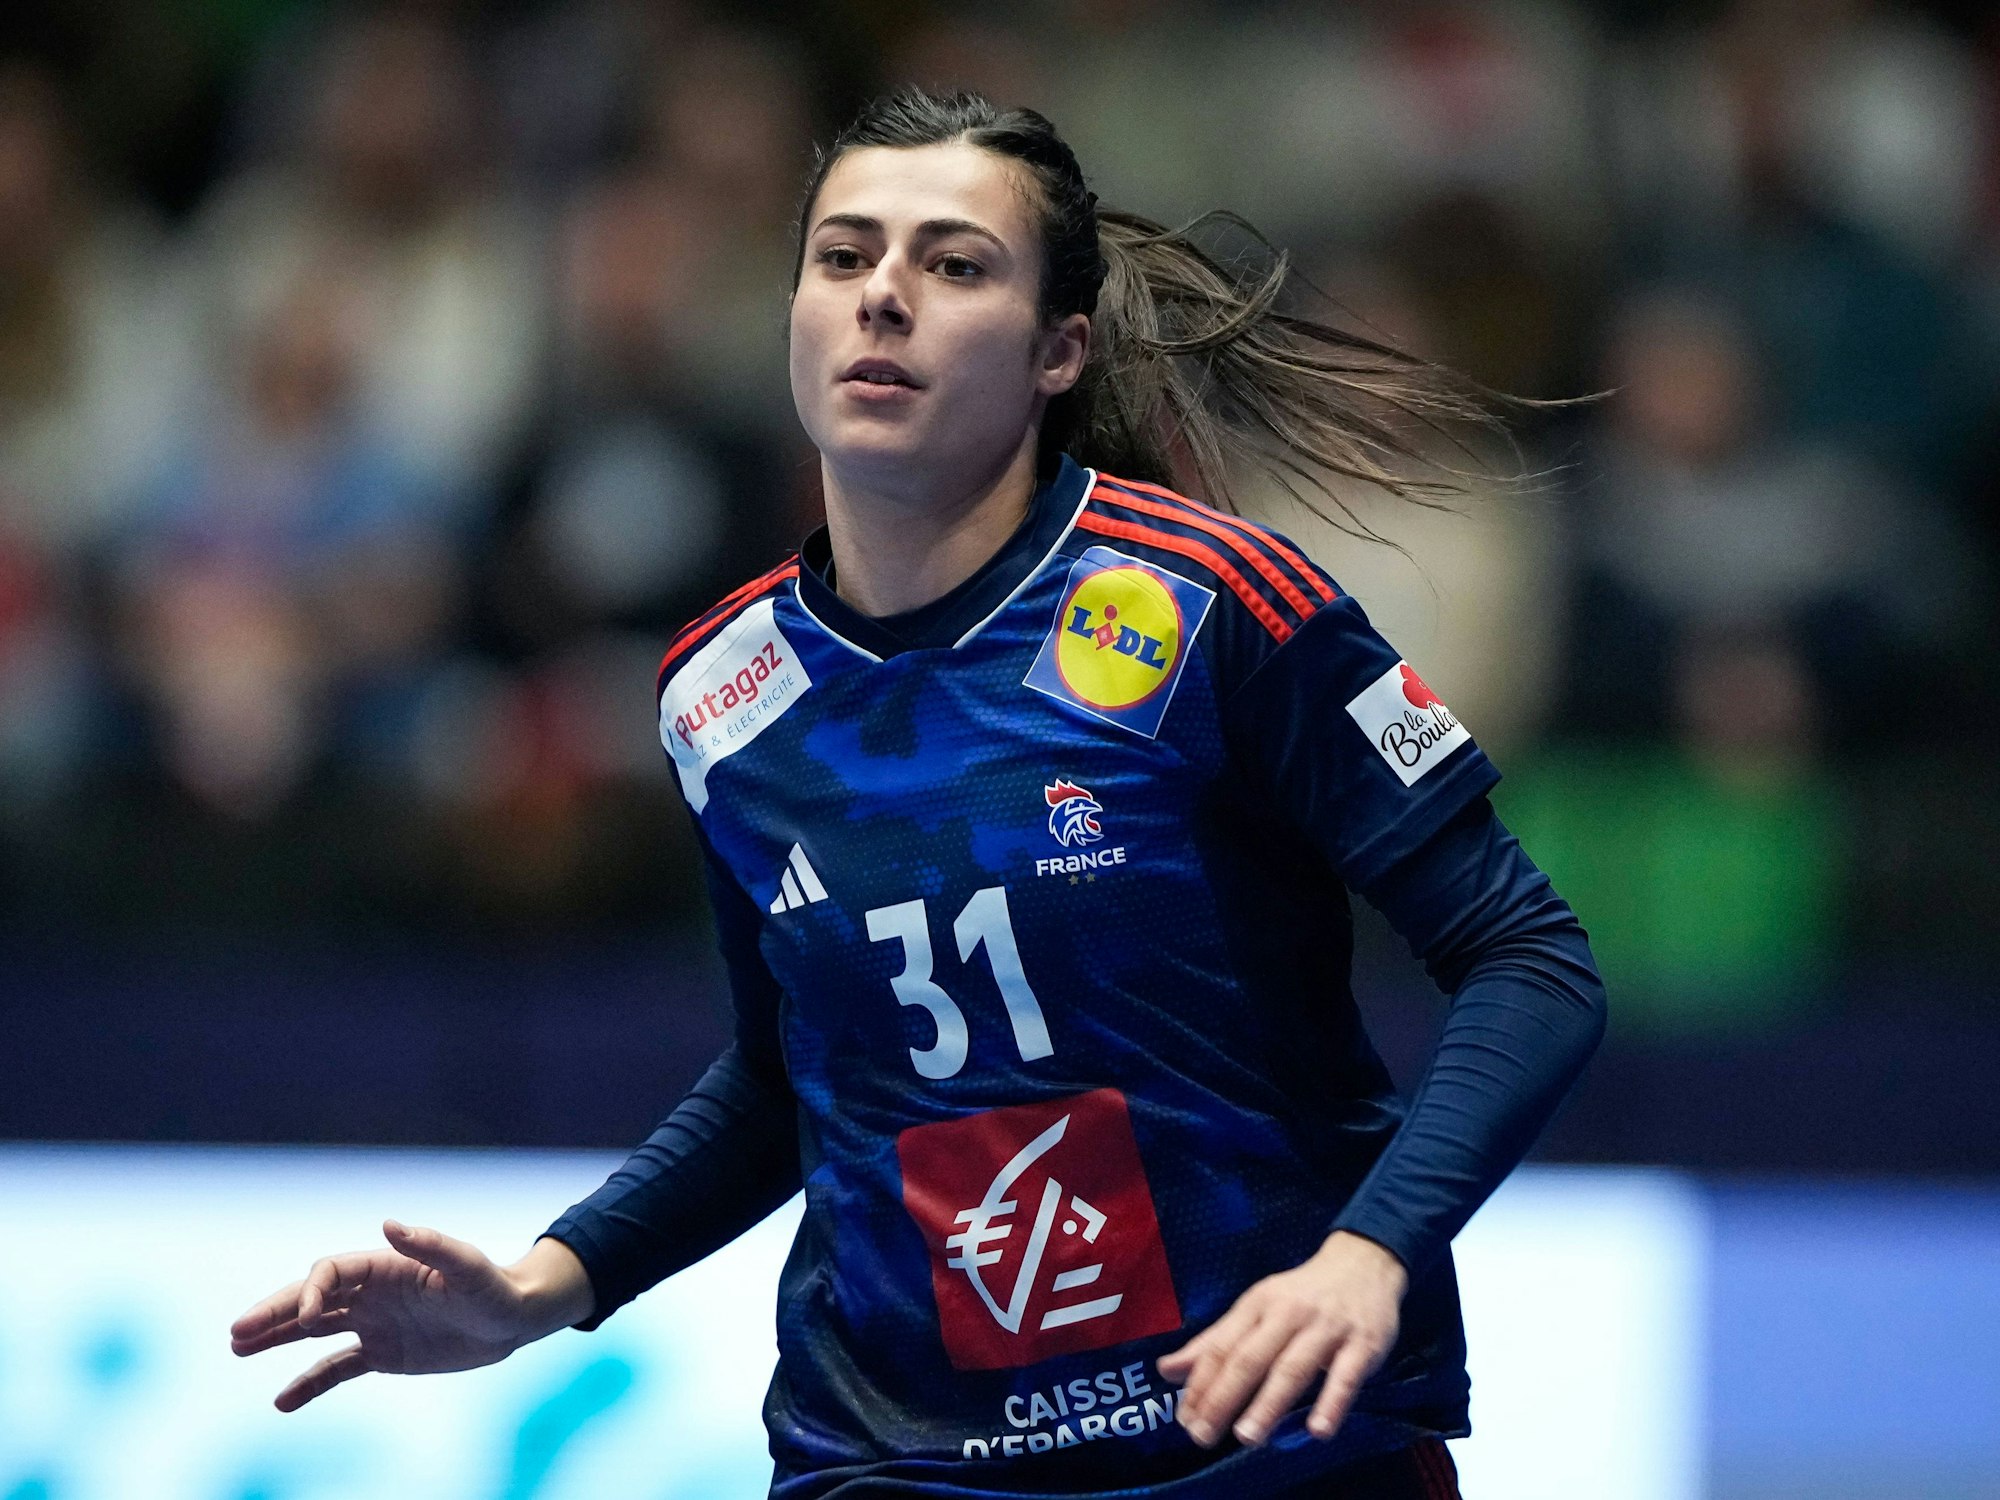 Lucie Granier während eines Handballspiels.